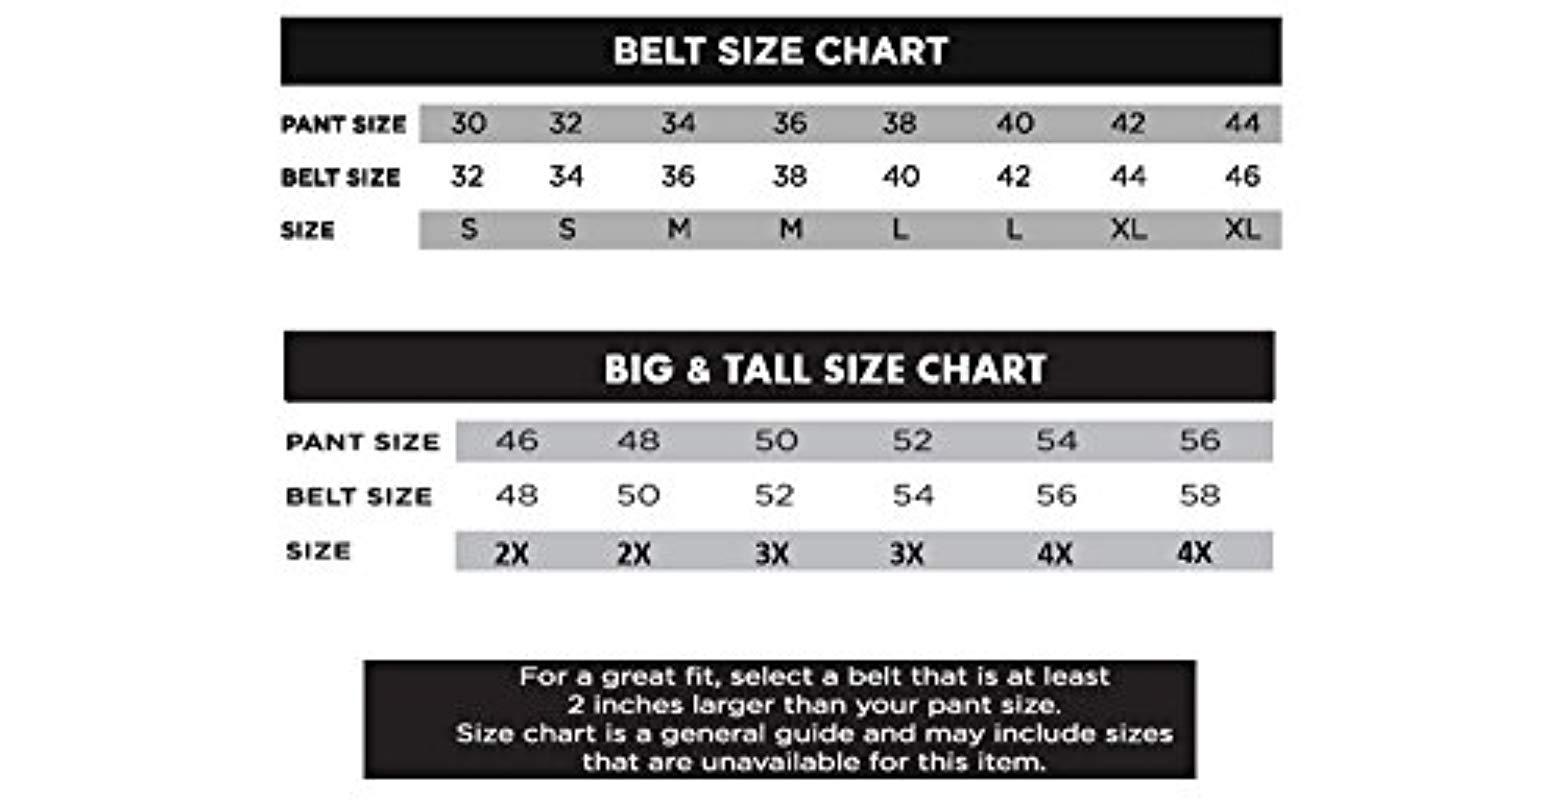 In Shape Belt Size Chart